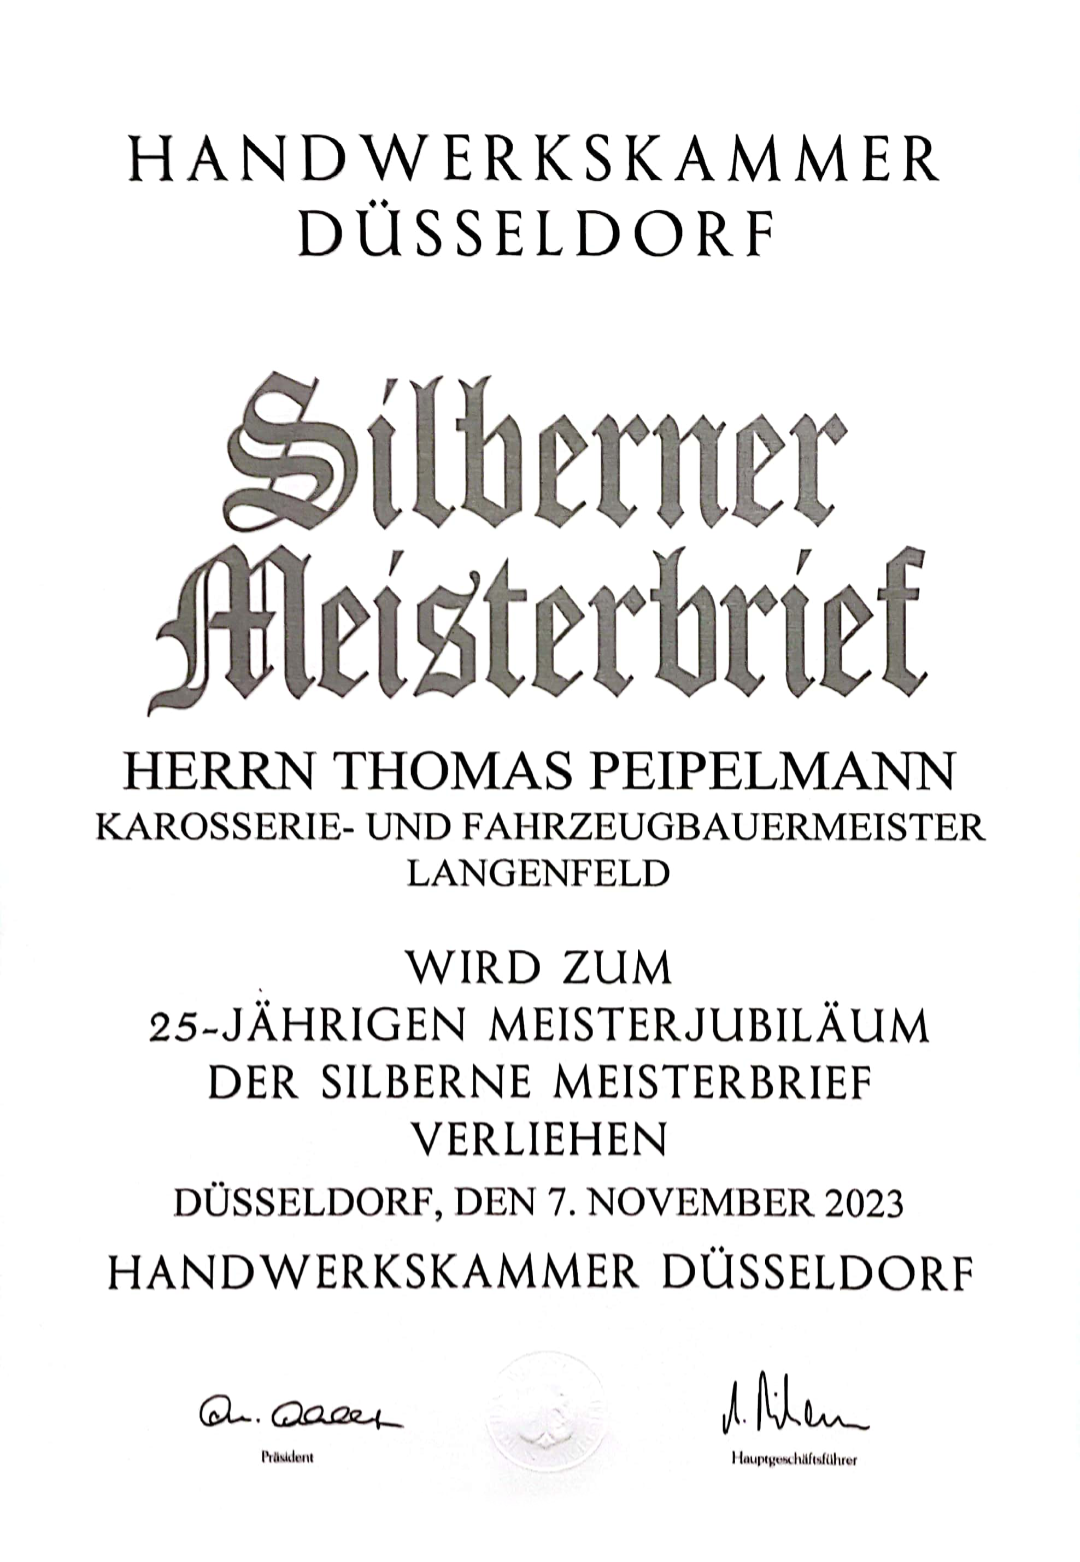 Meisterbrief - Silberner Meisterbrief